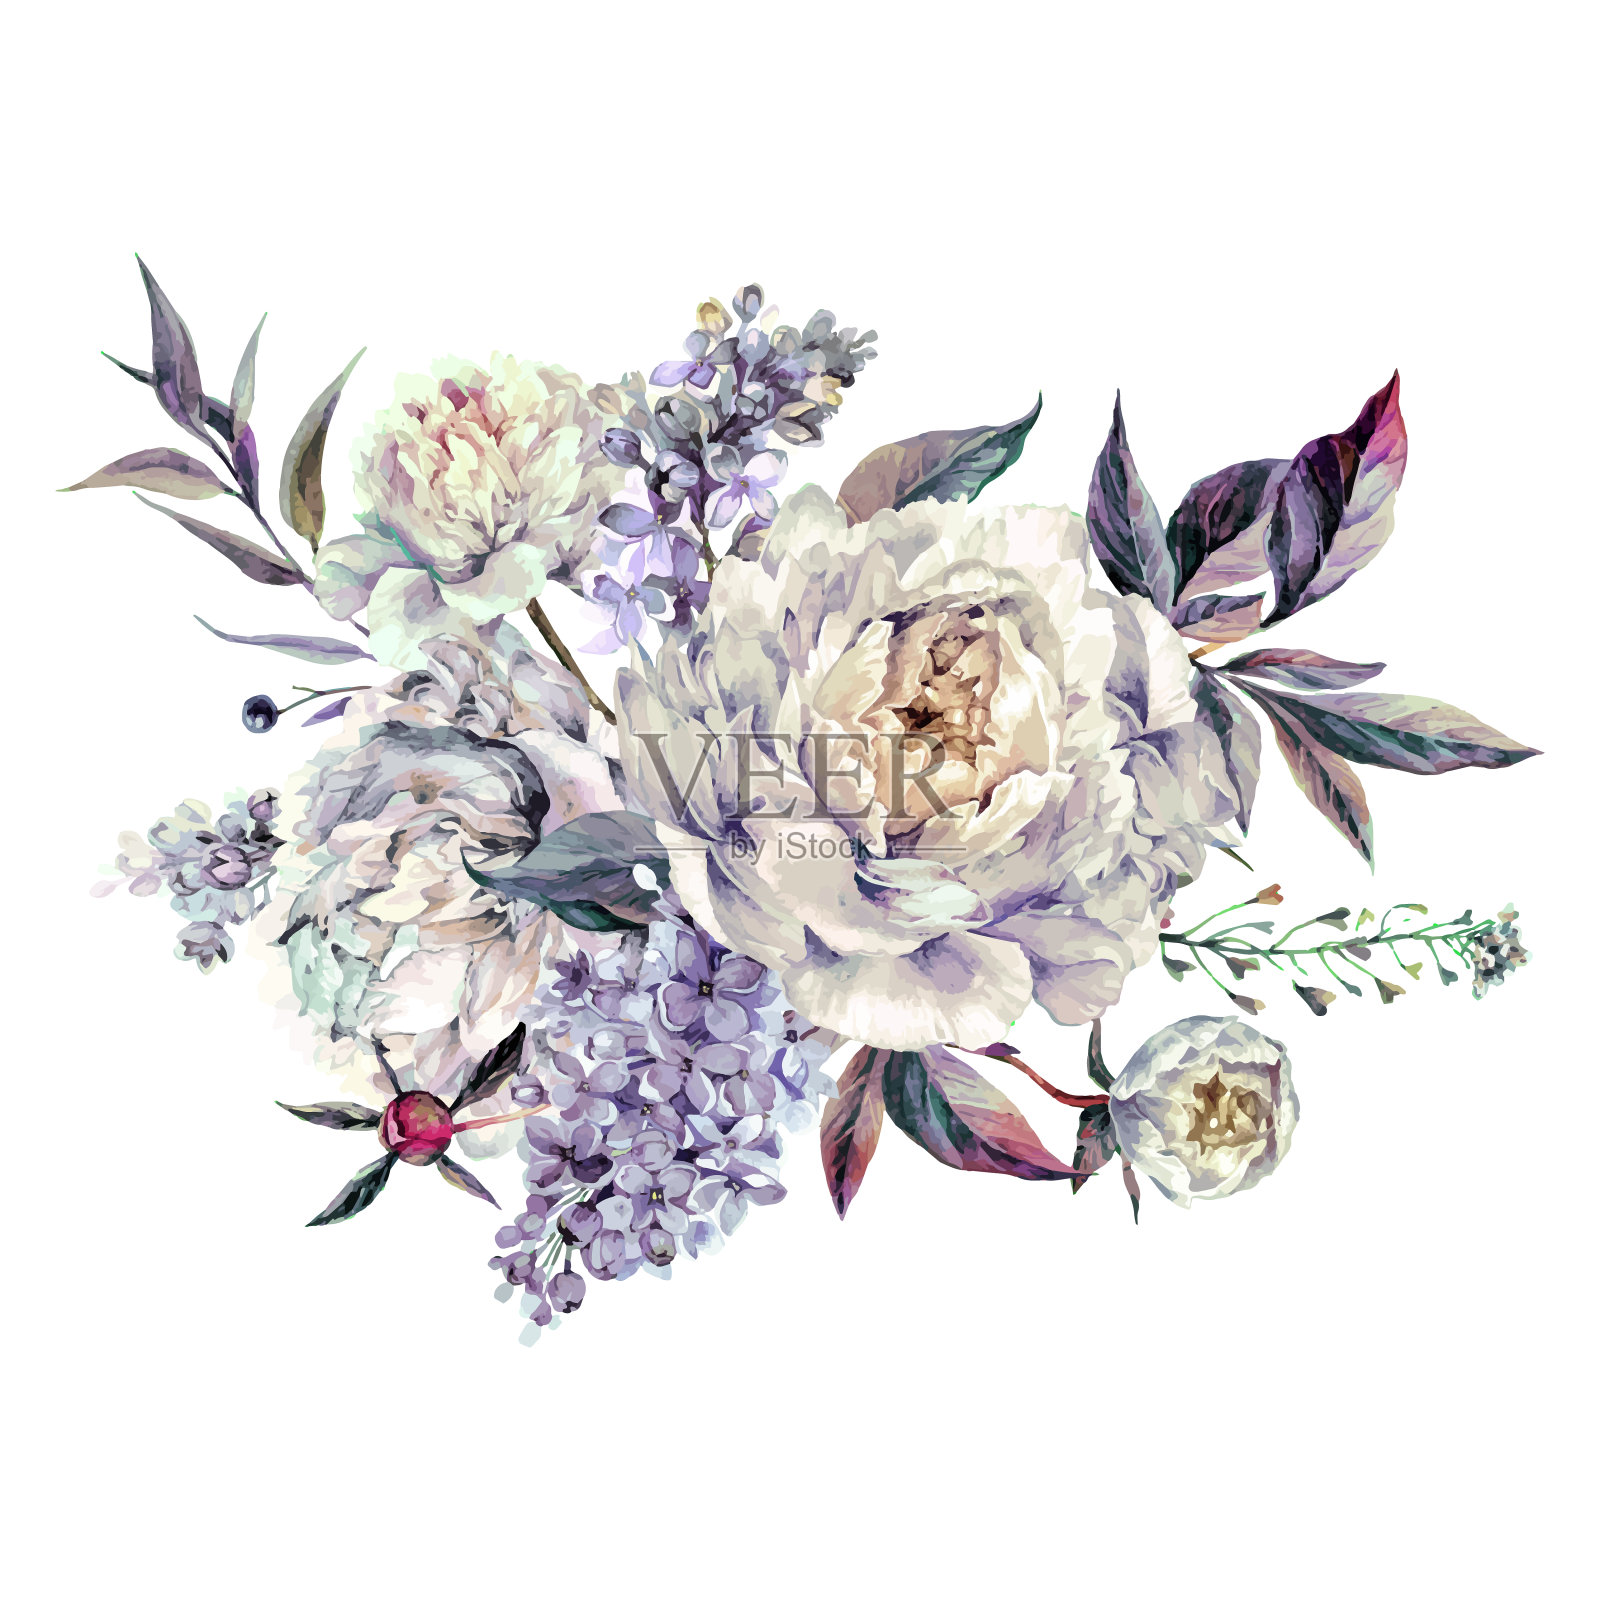 水彩白色牡丹和丁香花束插画图片素材